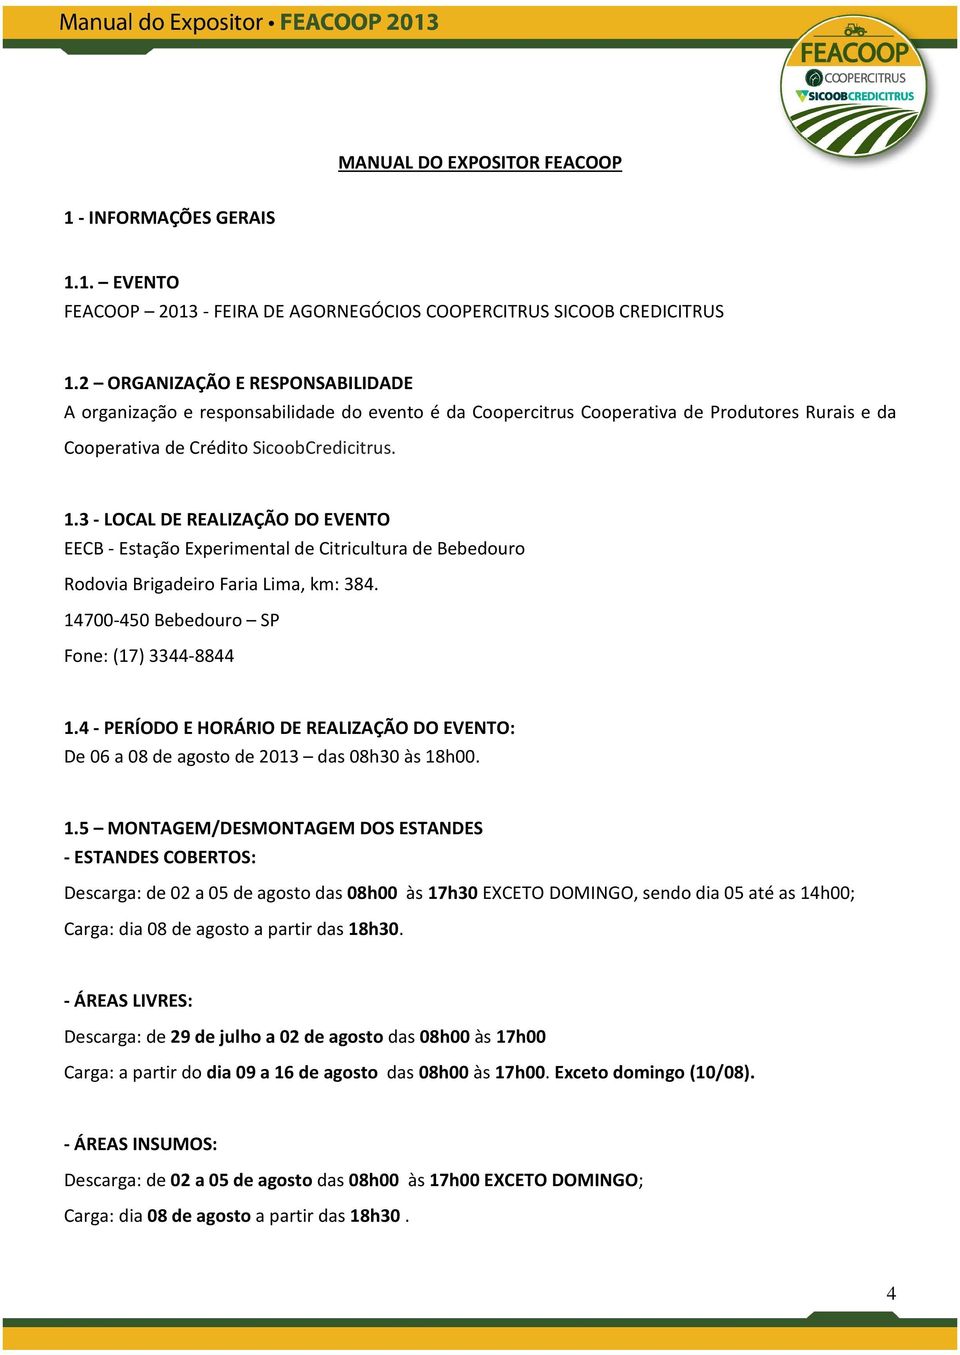 3 - LOCAL DE REALIZAÇÃO DO EVENTO EECB - Estação Experimental de Citricultura de Bebedouro Rodovia Brigadeiro Faria Lima, km: 384. 14700-450 Bebedouro SP Fone: (17) 3344-8844 1.